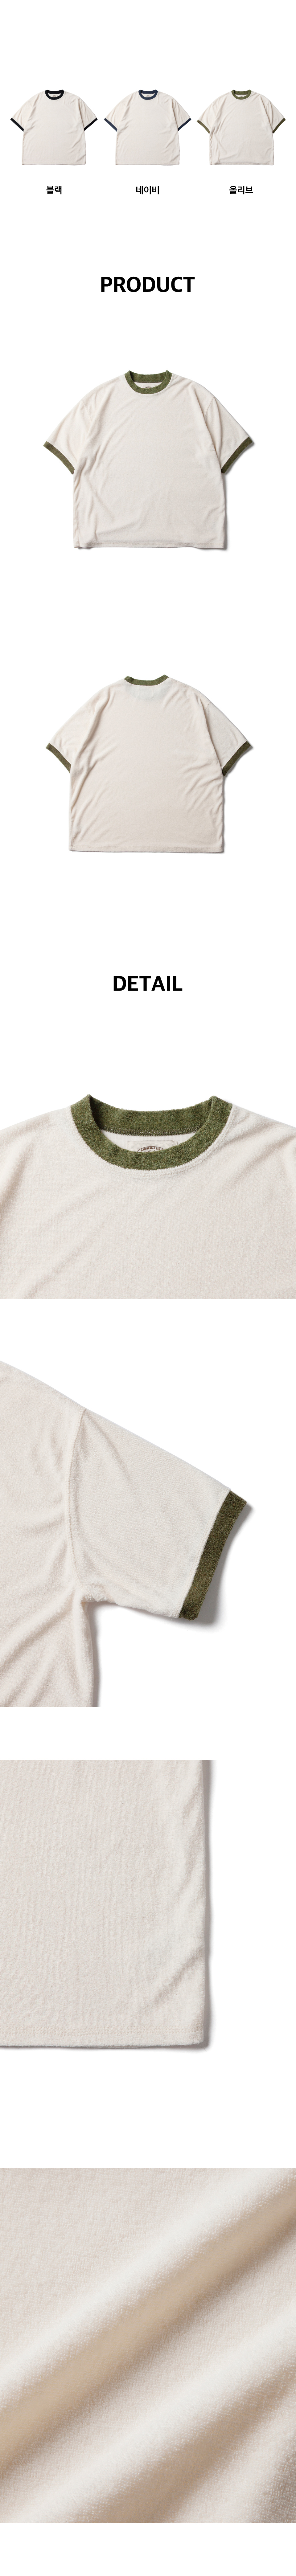 상세페이지_테리+링거+티셔츠_올리브+제품컷.jpg